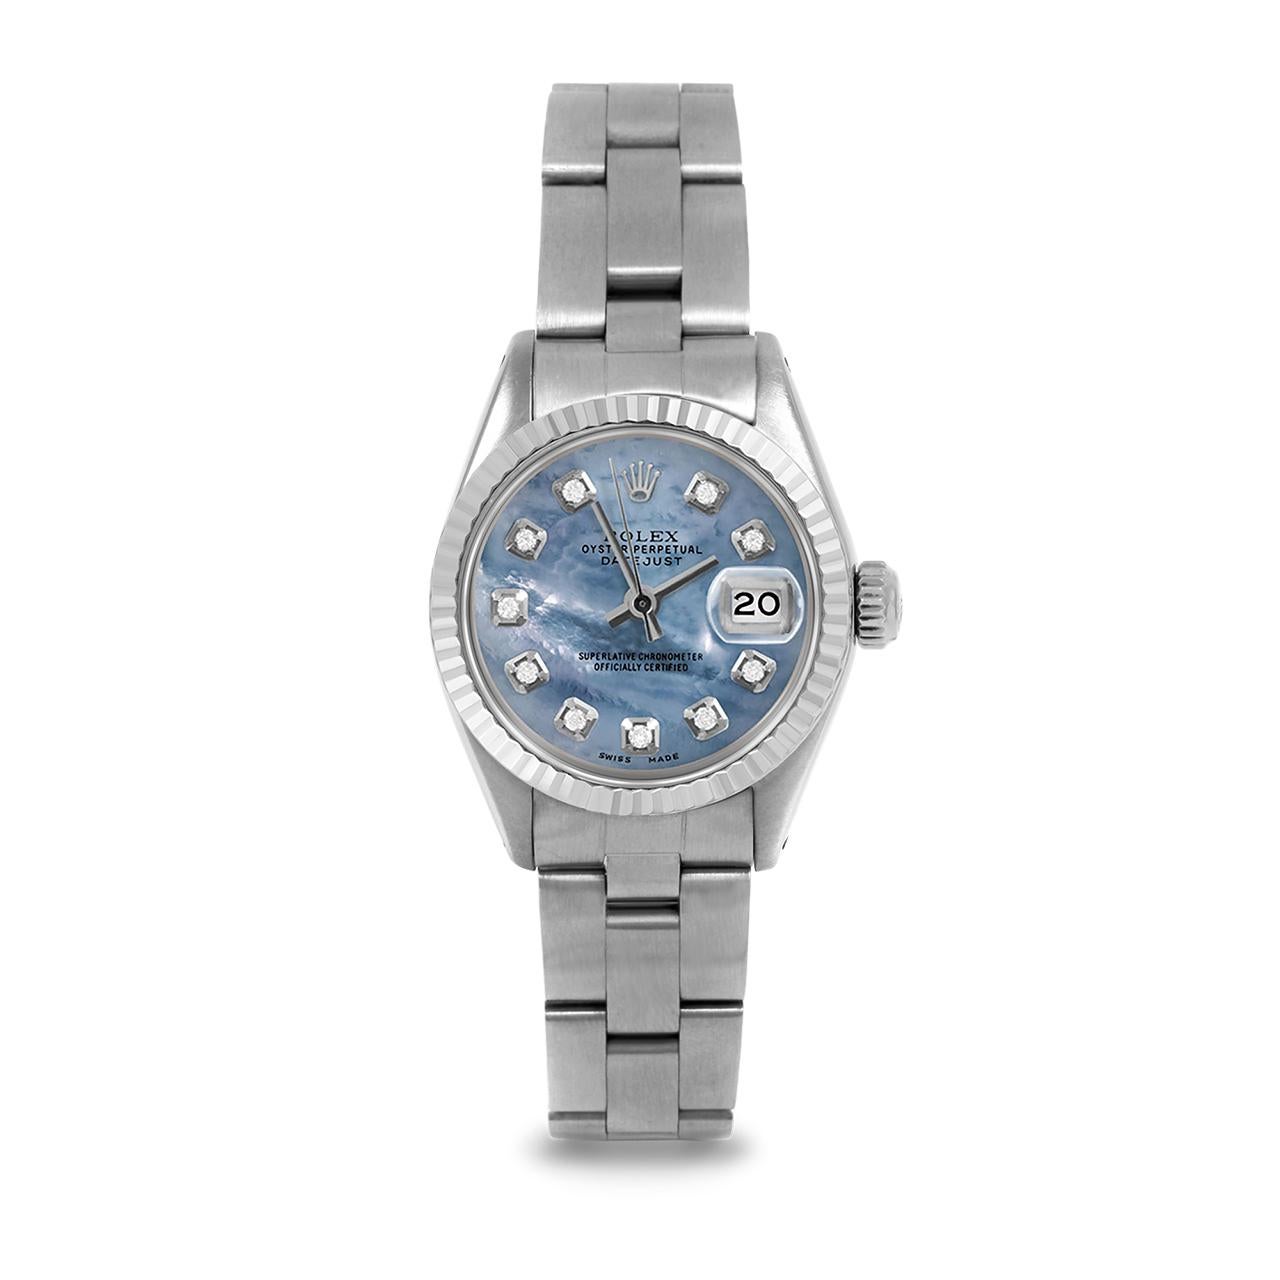 Montre Rolex 6917 Ladies 26mm Datejust d'occasion, cadran bleu personnalisé en nacre avec diamants et lunette cannelée sur bracelet Rolex Oyster en acier inoxydable.   

SKU 6917-SS-BLMOP-DIA-AM-FLT-OYS


Marque/Modèle :        Rolex Datejust
Numéro